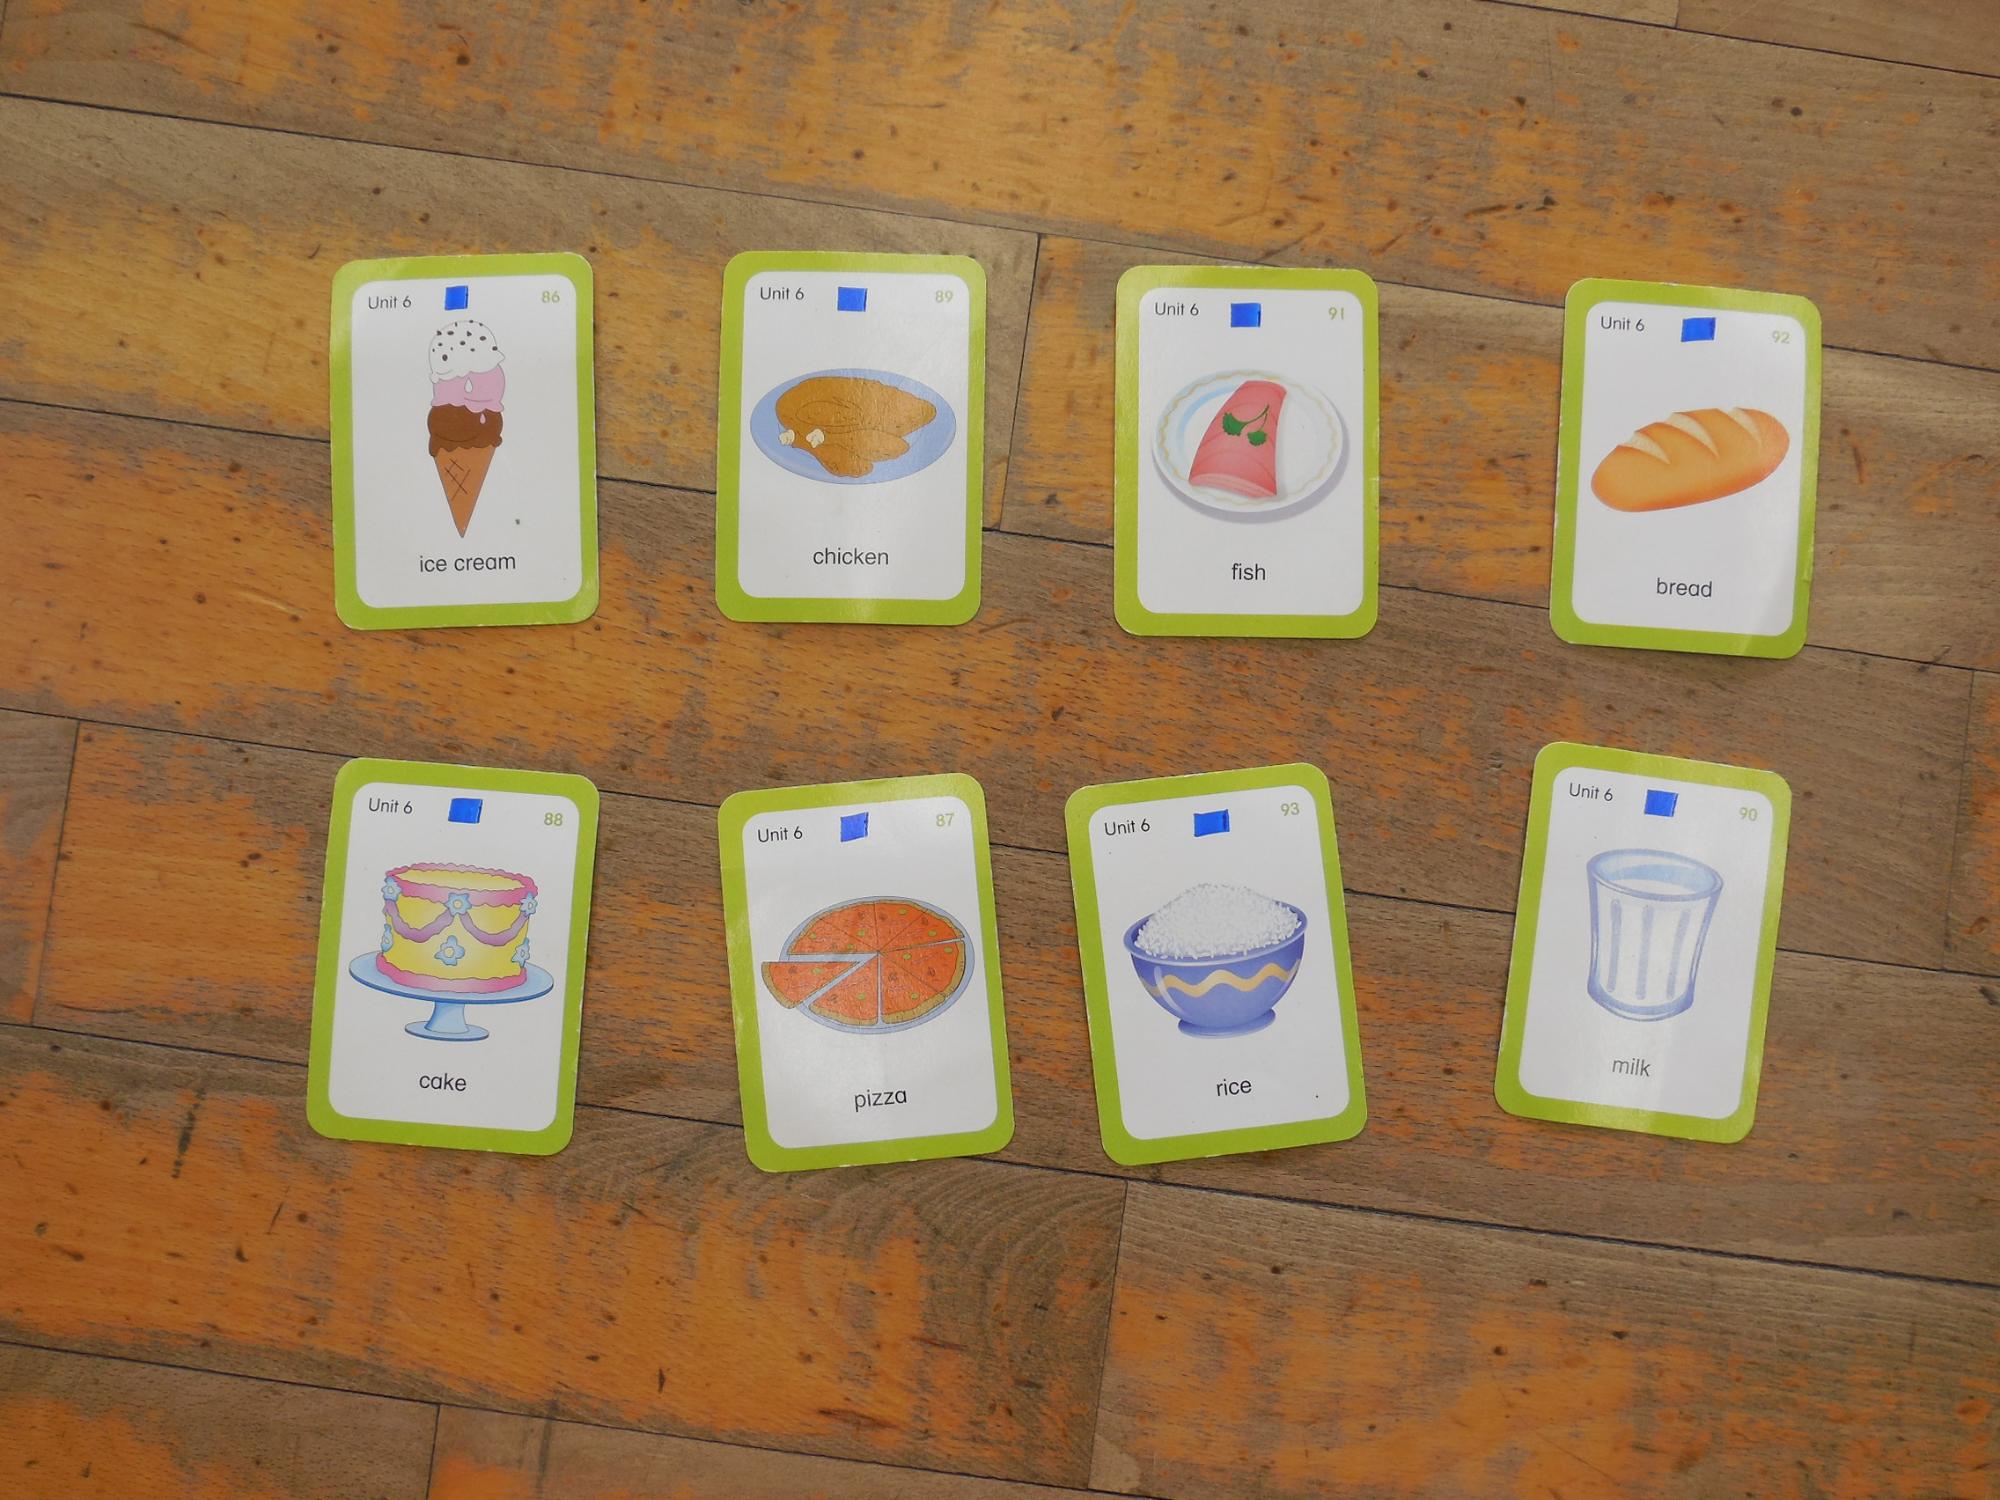 ビンゴゲームで使用するカードの写真